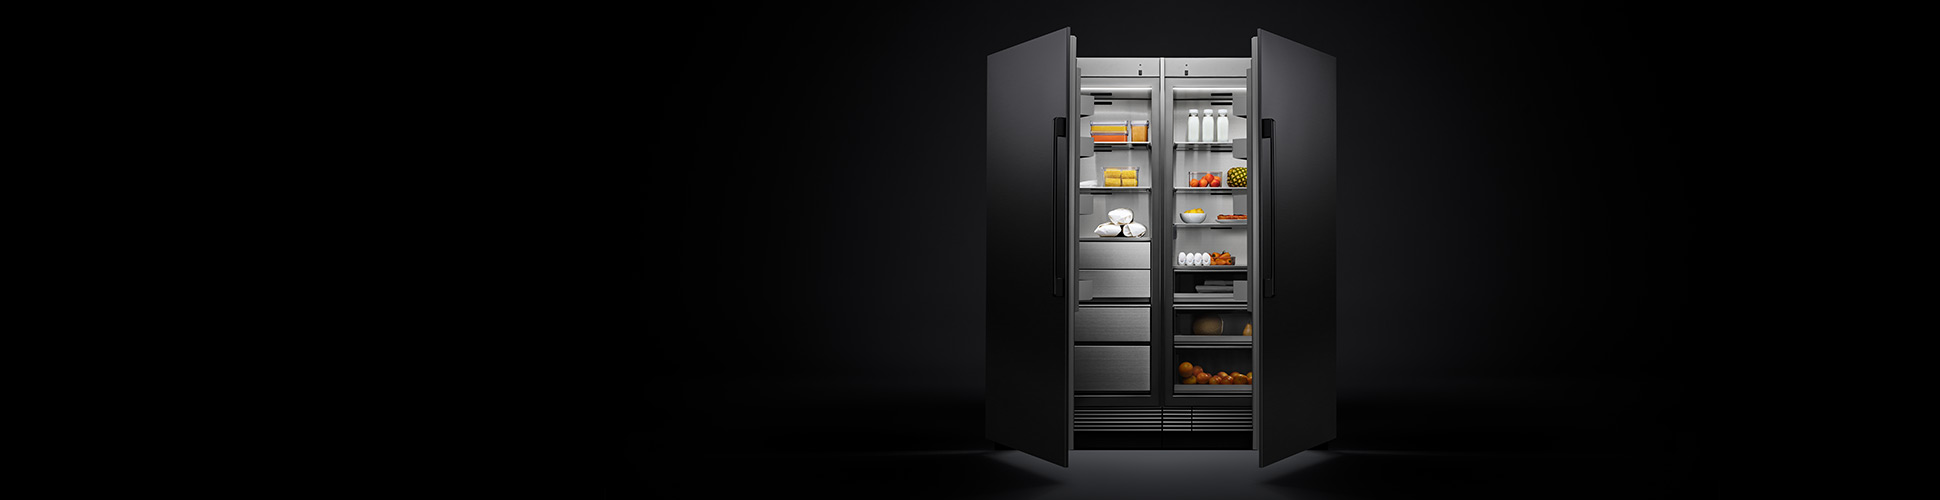 Dacor Refrigerator in dark room with doors open